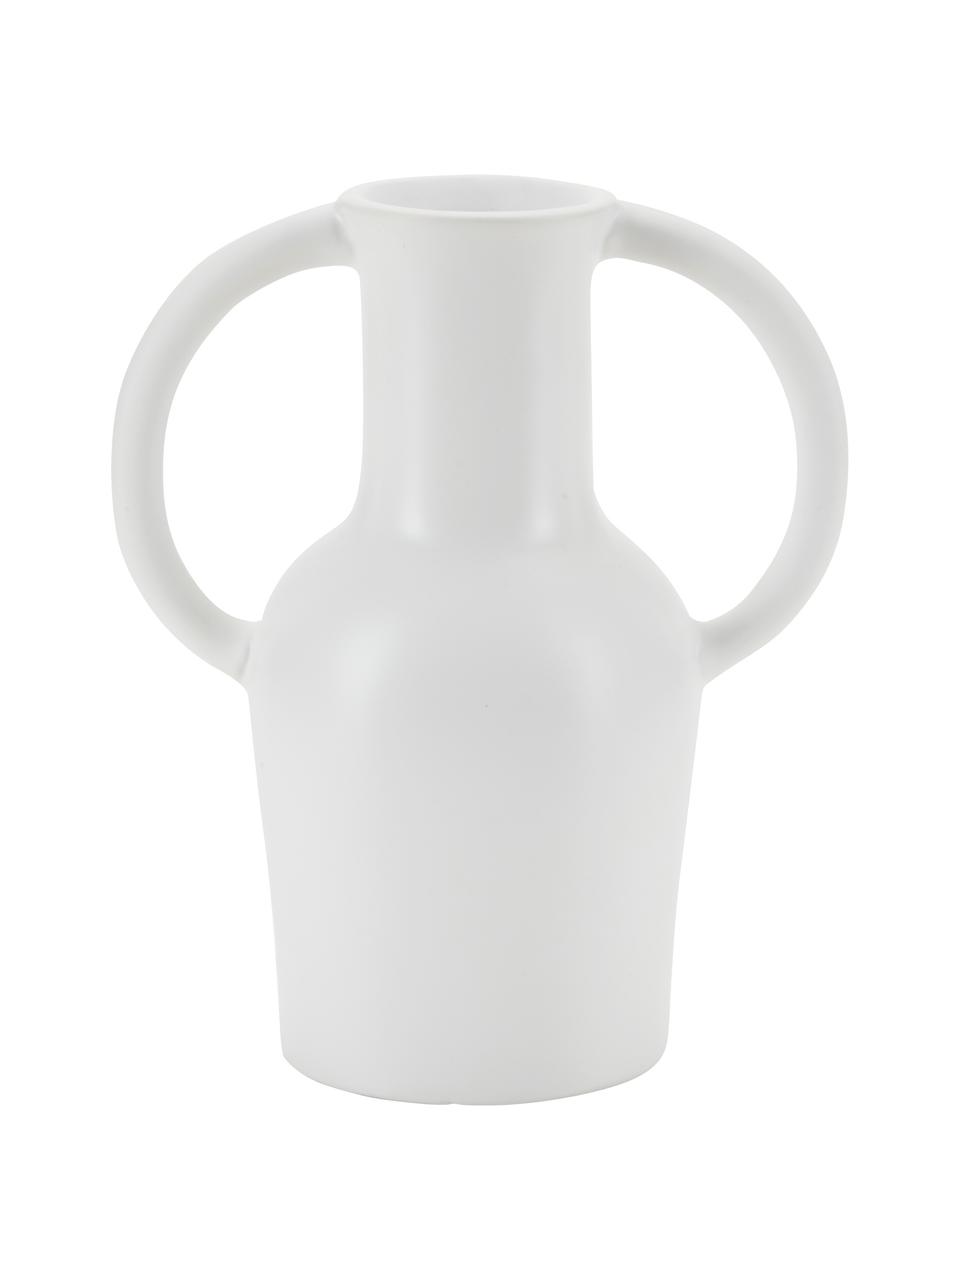 Kameninová váza s rukojetí Harmony, Kamenina, Bílá, Š 15 cm, V 18 cm